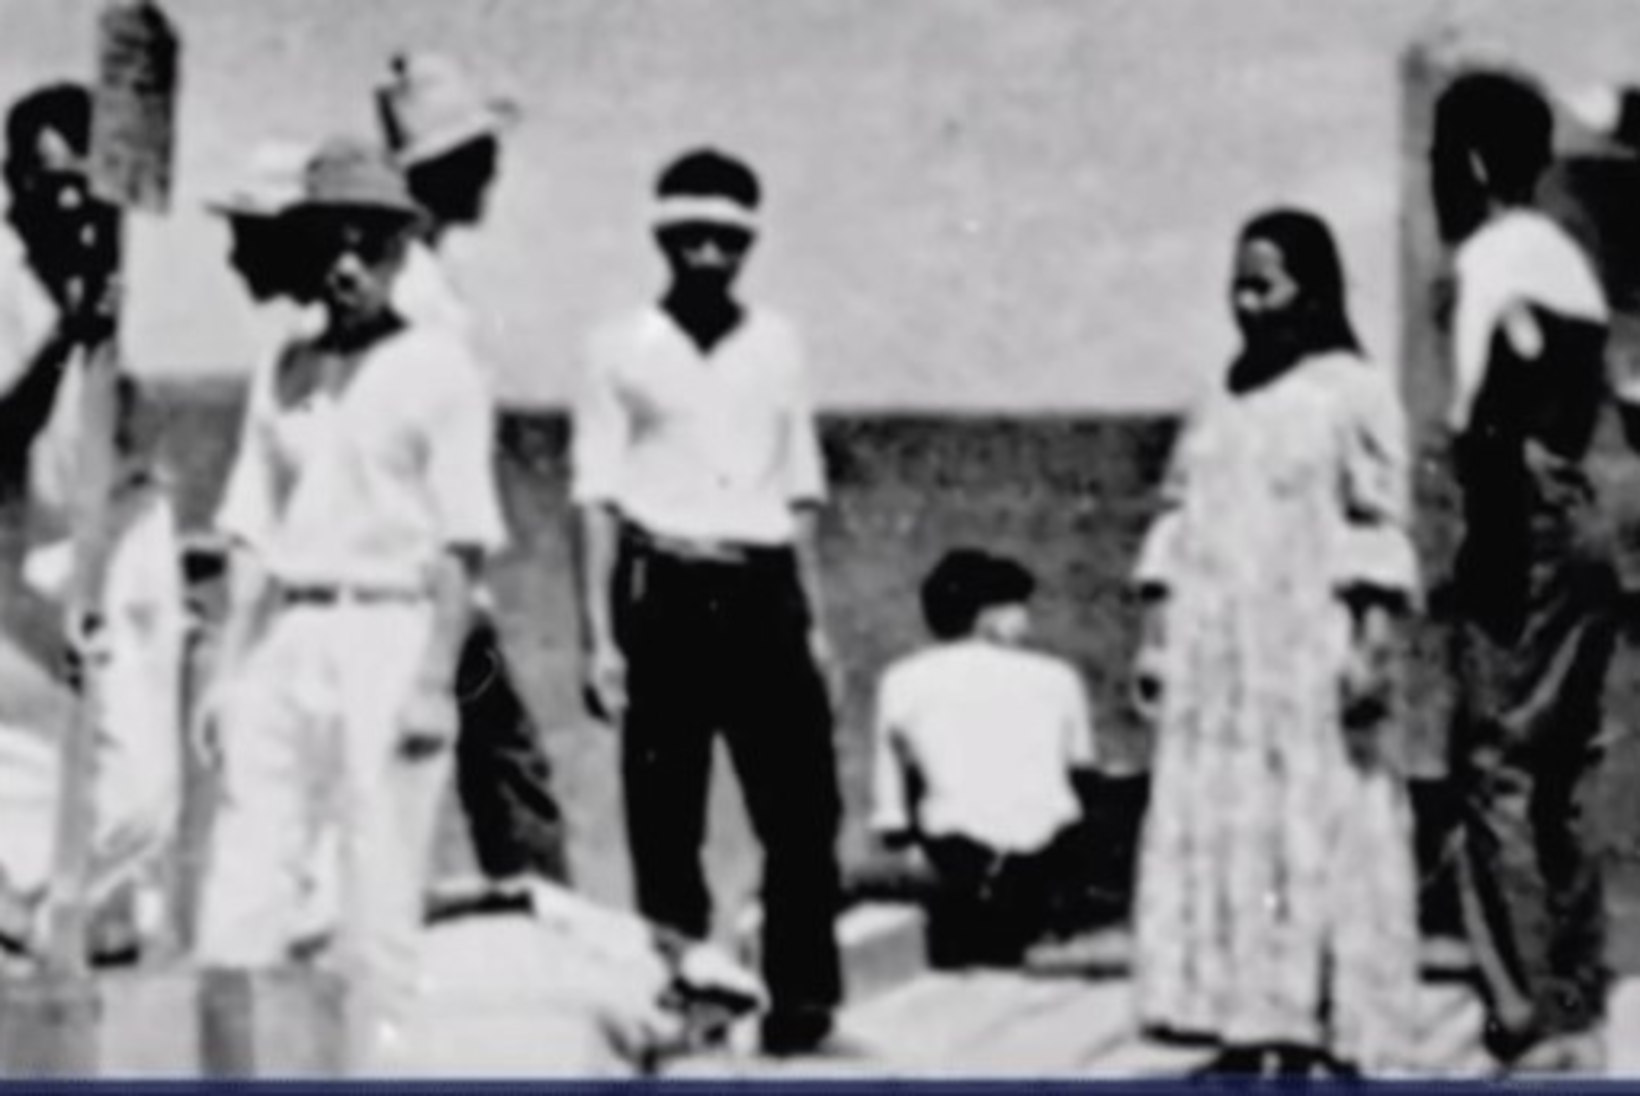 Kas 1937. aastal kadunuks jäänud naislendur poseerib 1940-ndail tehtud fotol?